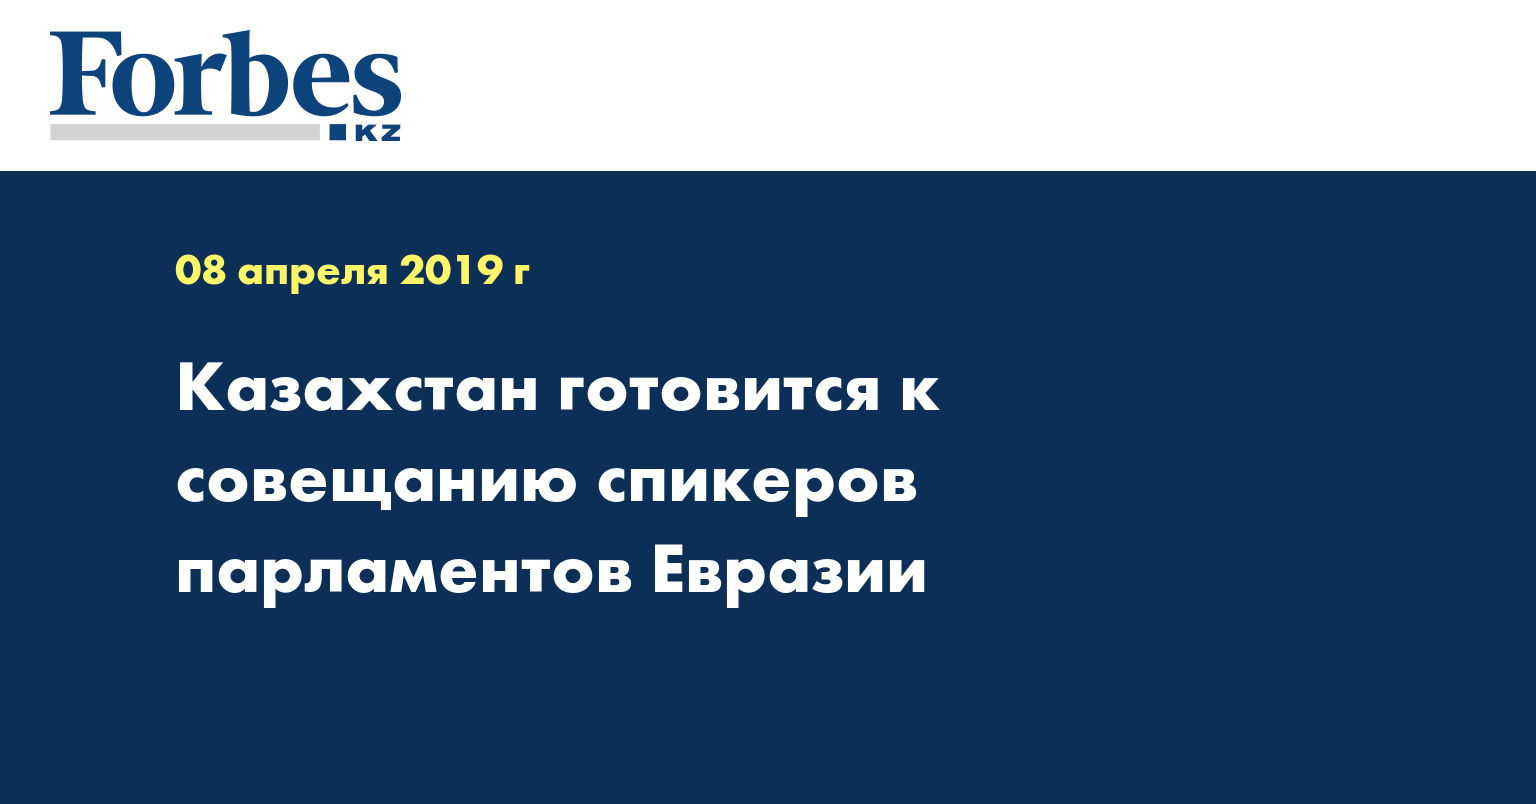 Казахстан готовится к совещанию спикеров парламентов Евразии